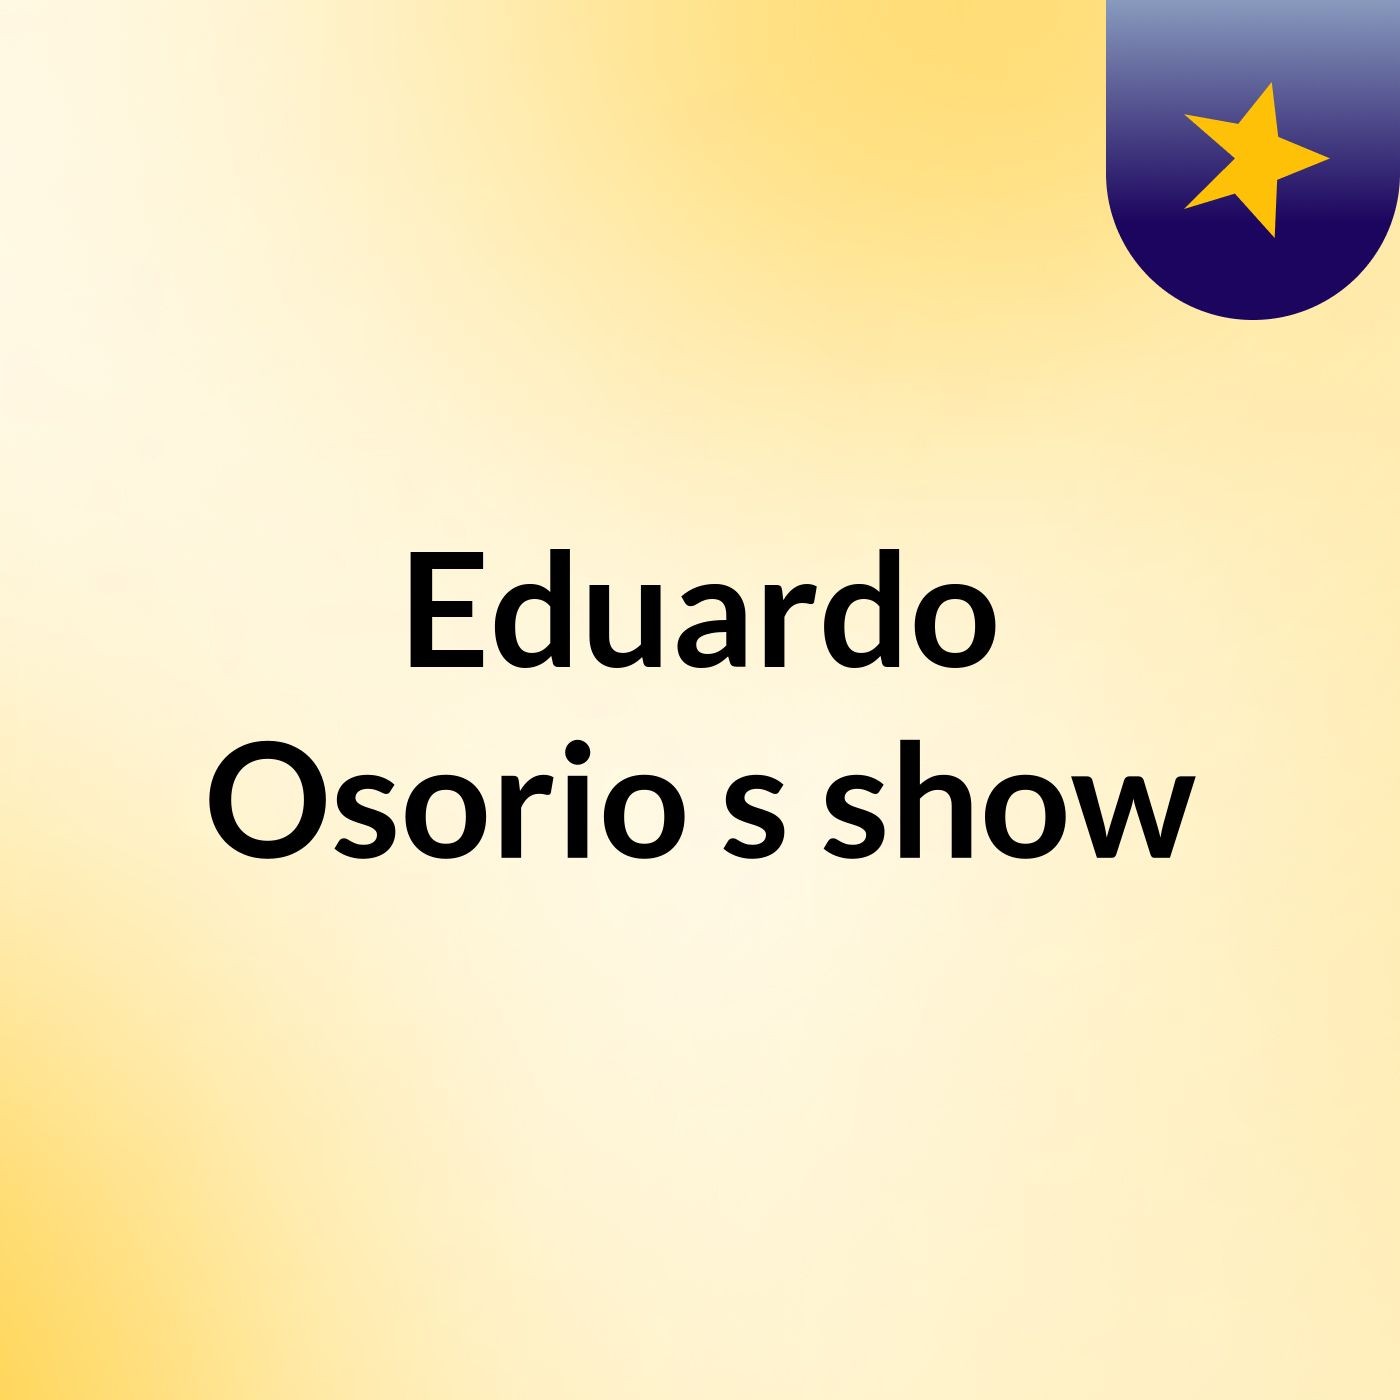 Eduardo Osorio's show